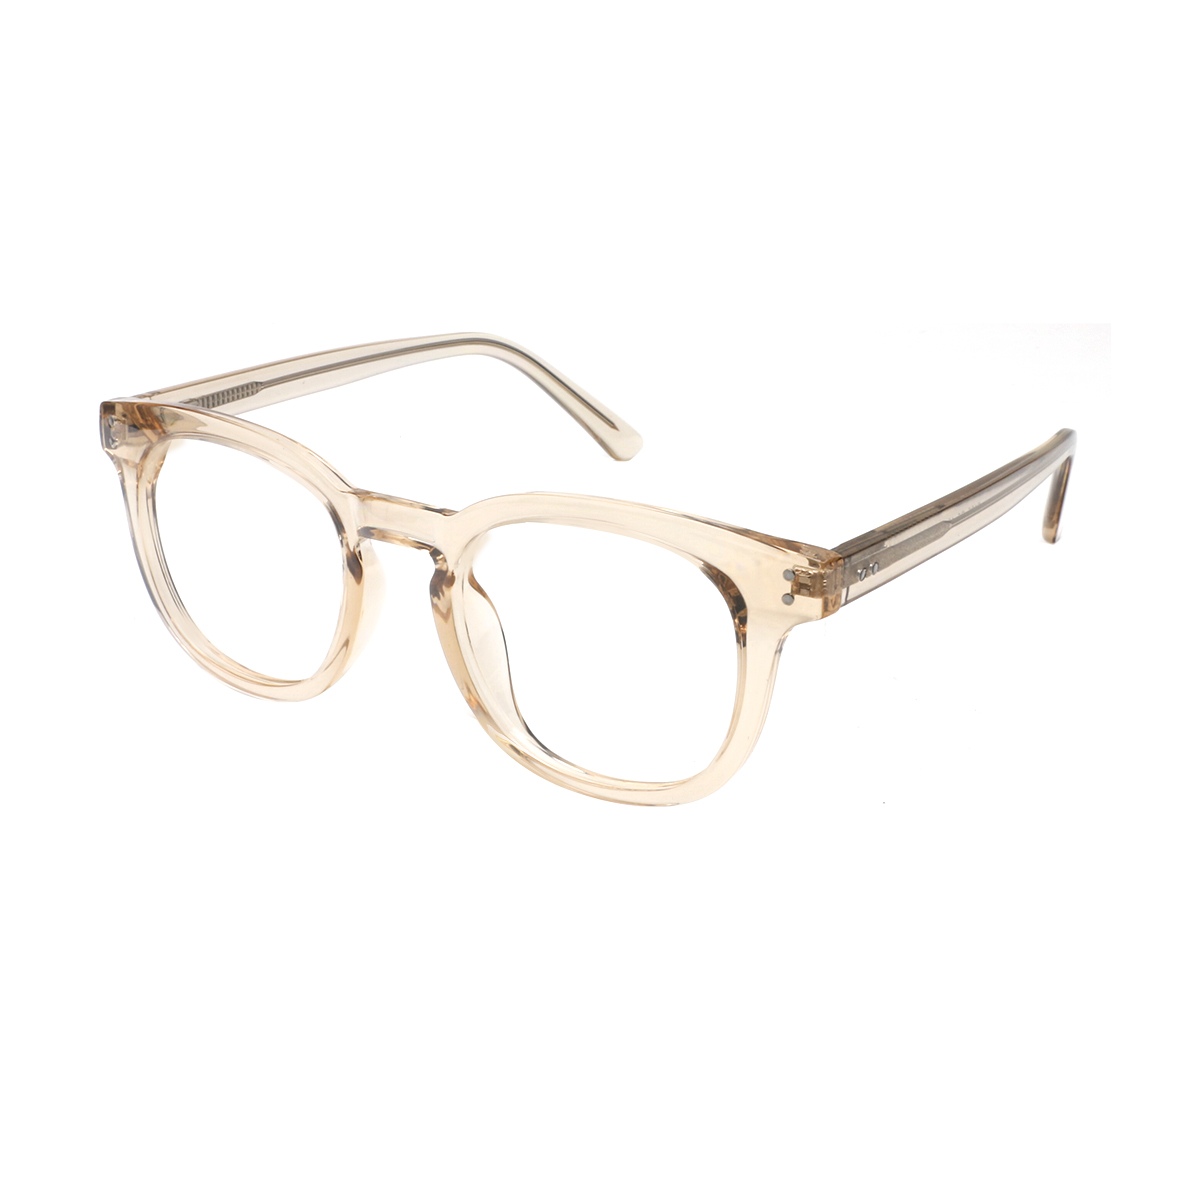 Rhodope - Oval Brown Reading Glasses for Men & Women